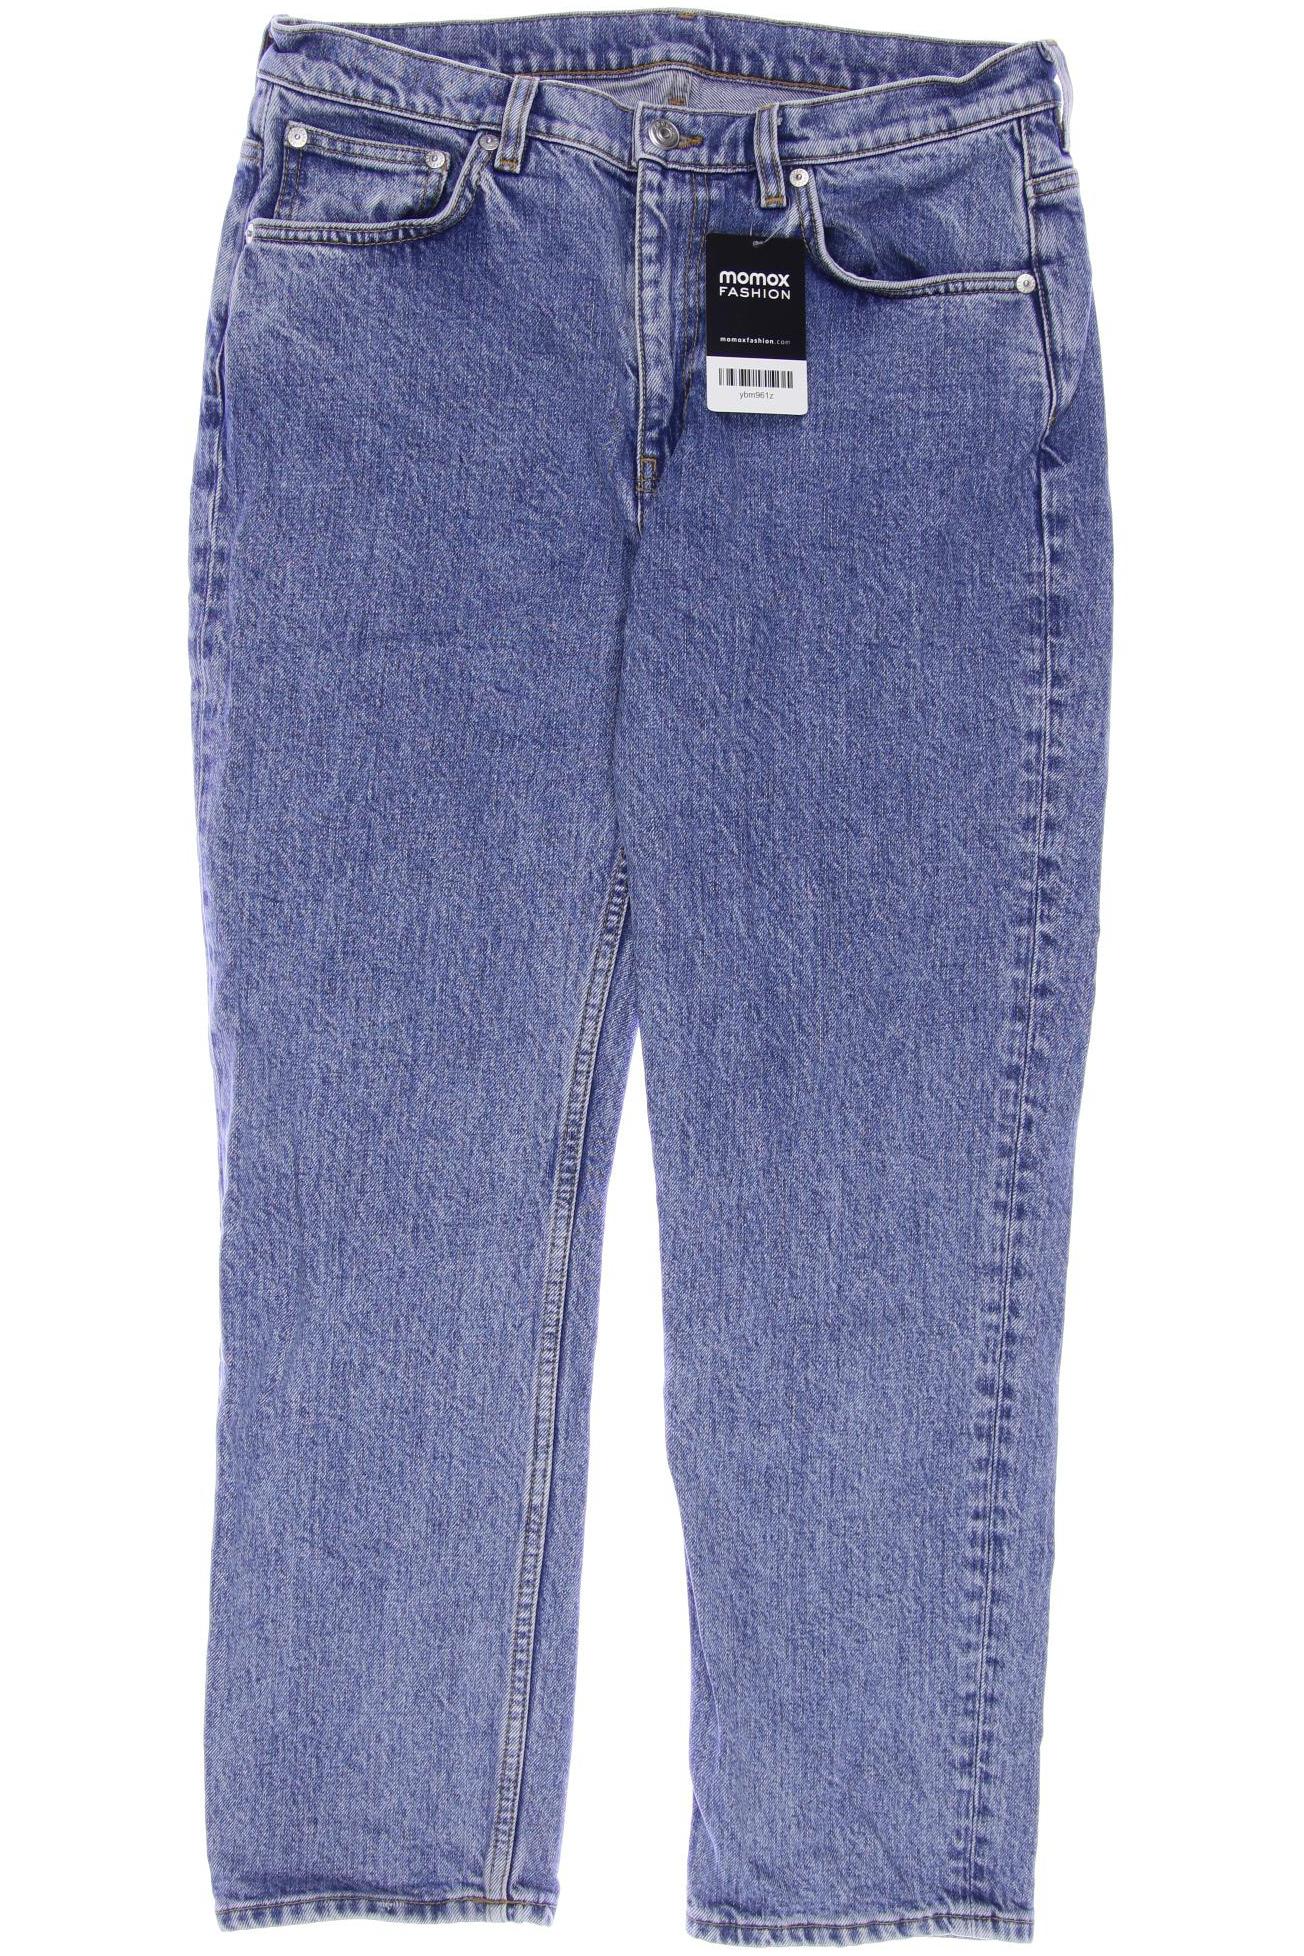 Arket Damen Jeans, blau, Gr. 40 von Arket